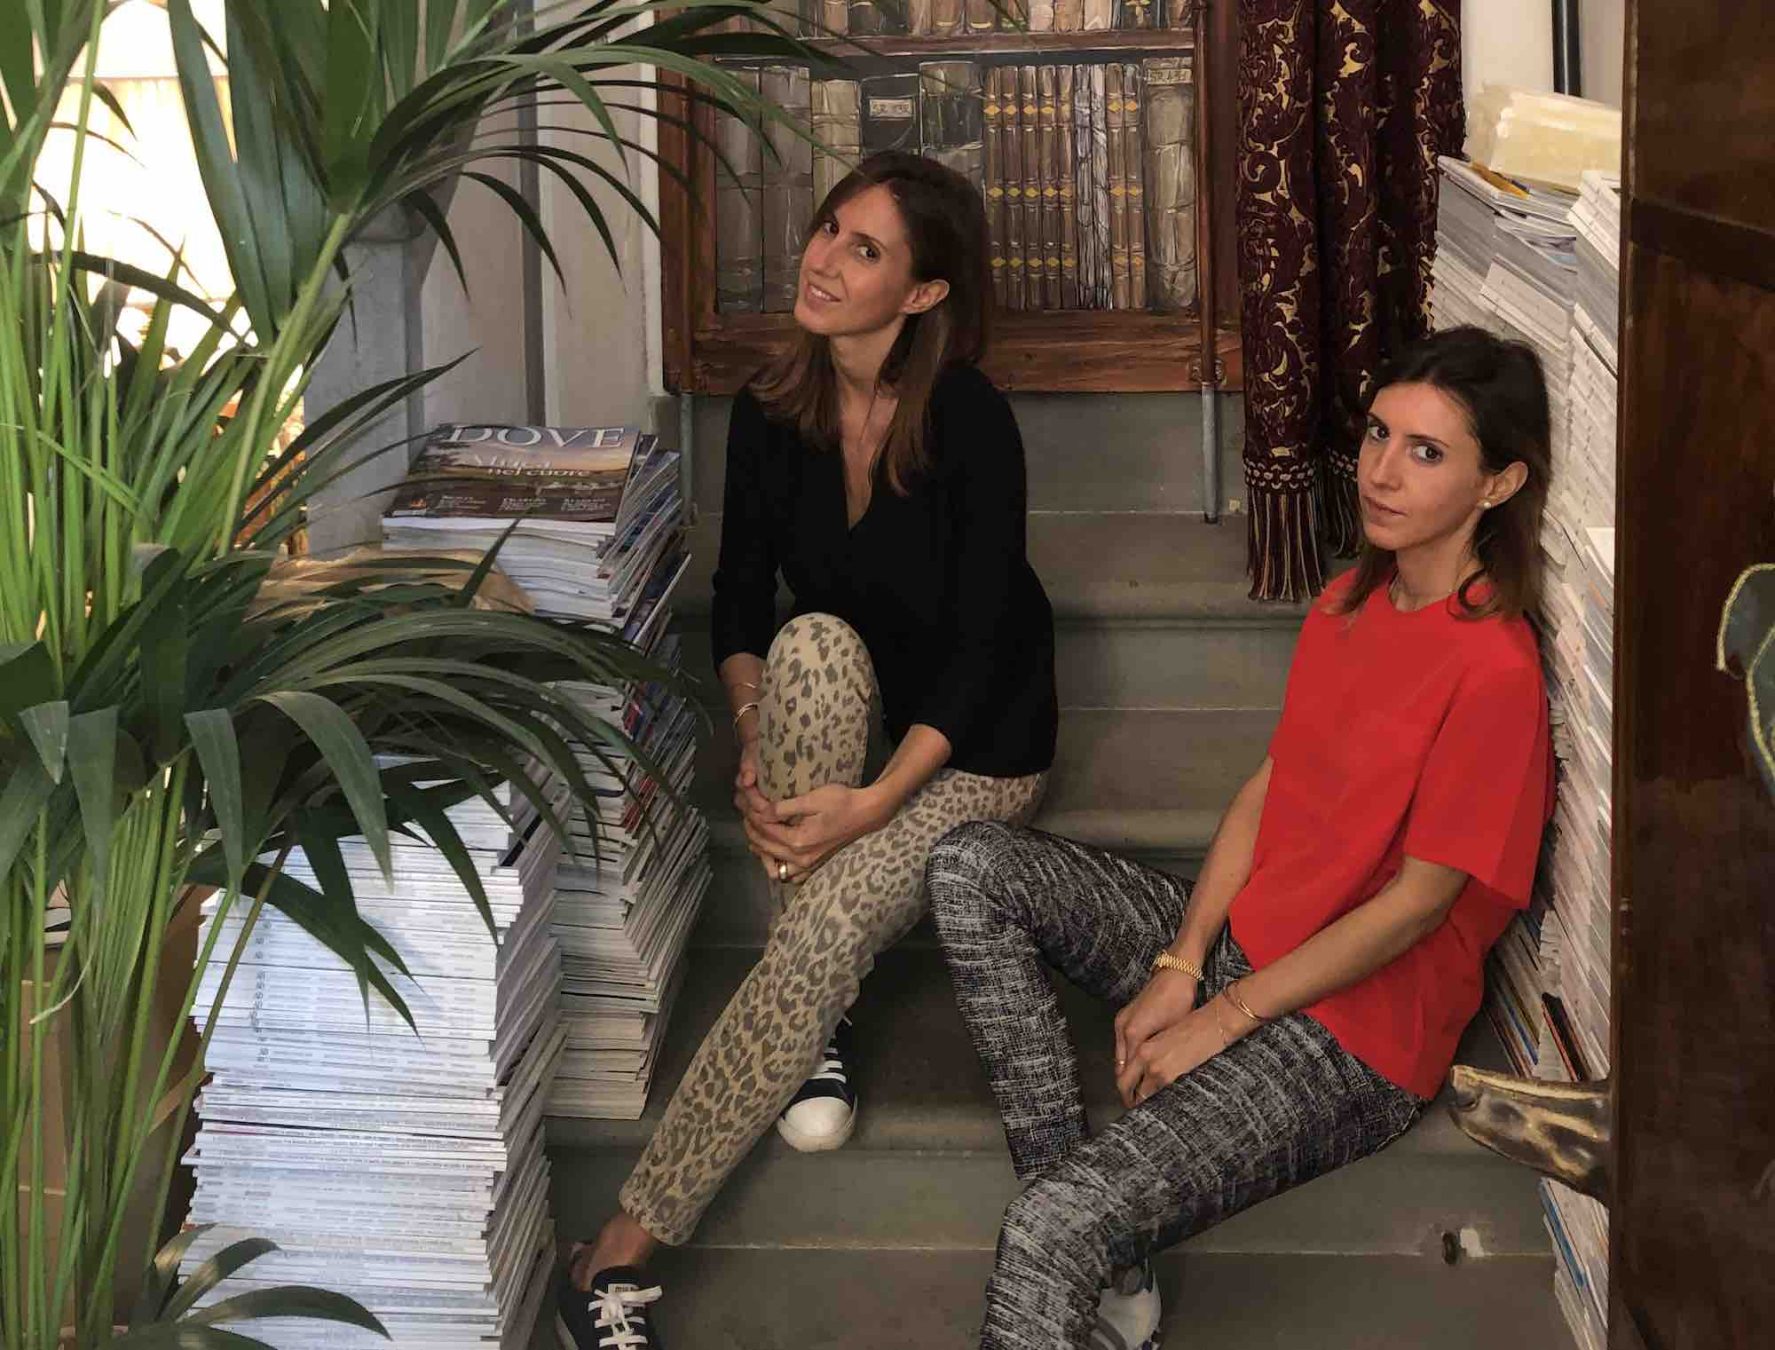 Caftanii, l'atelier di moda a Firenze di Ginevra e Ludovica Fagioli, propone nuovi modi per indossare il caftano, capo chic e contemporaneo